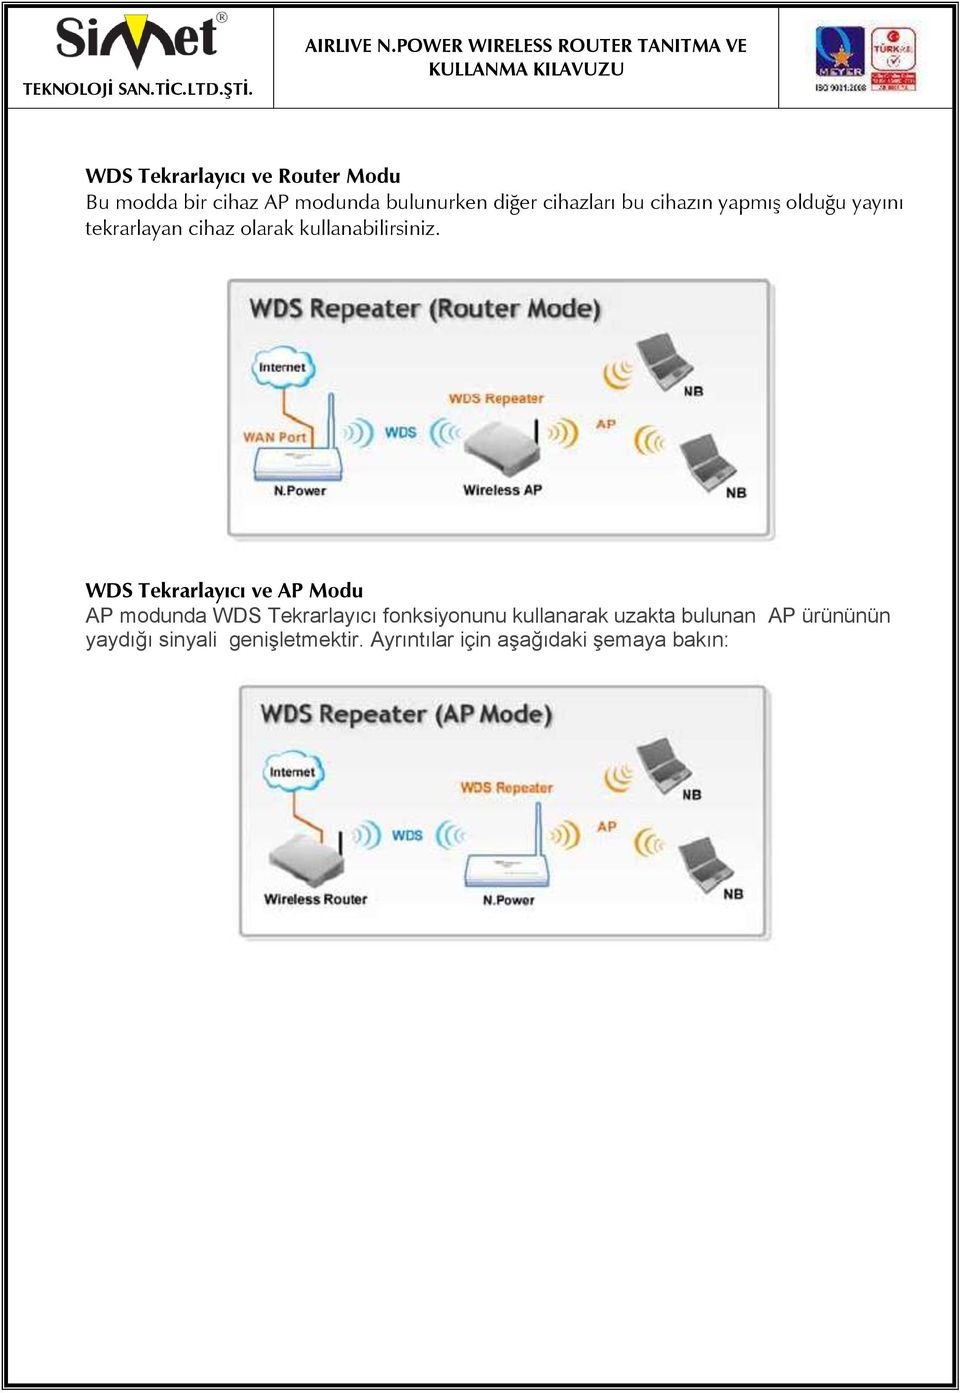 WDS Tekrarlayıcı ve AP Modu AP modunda WDS Tekrarlayıcı fonksiyonunu kullanarak